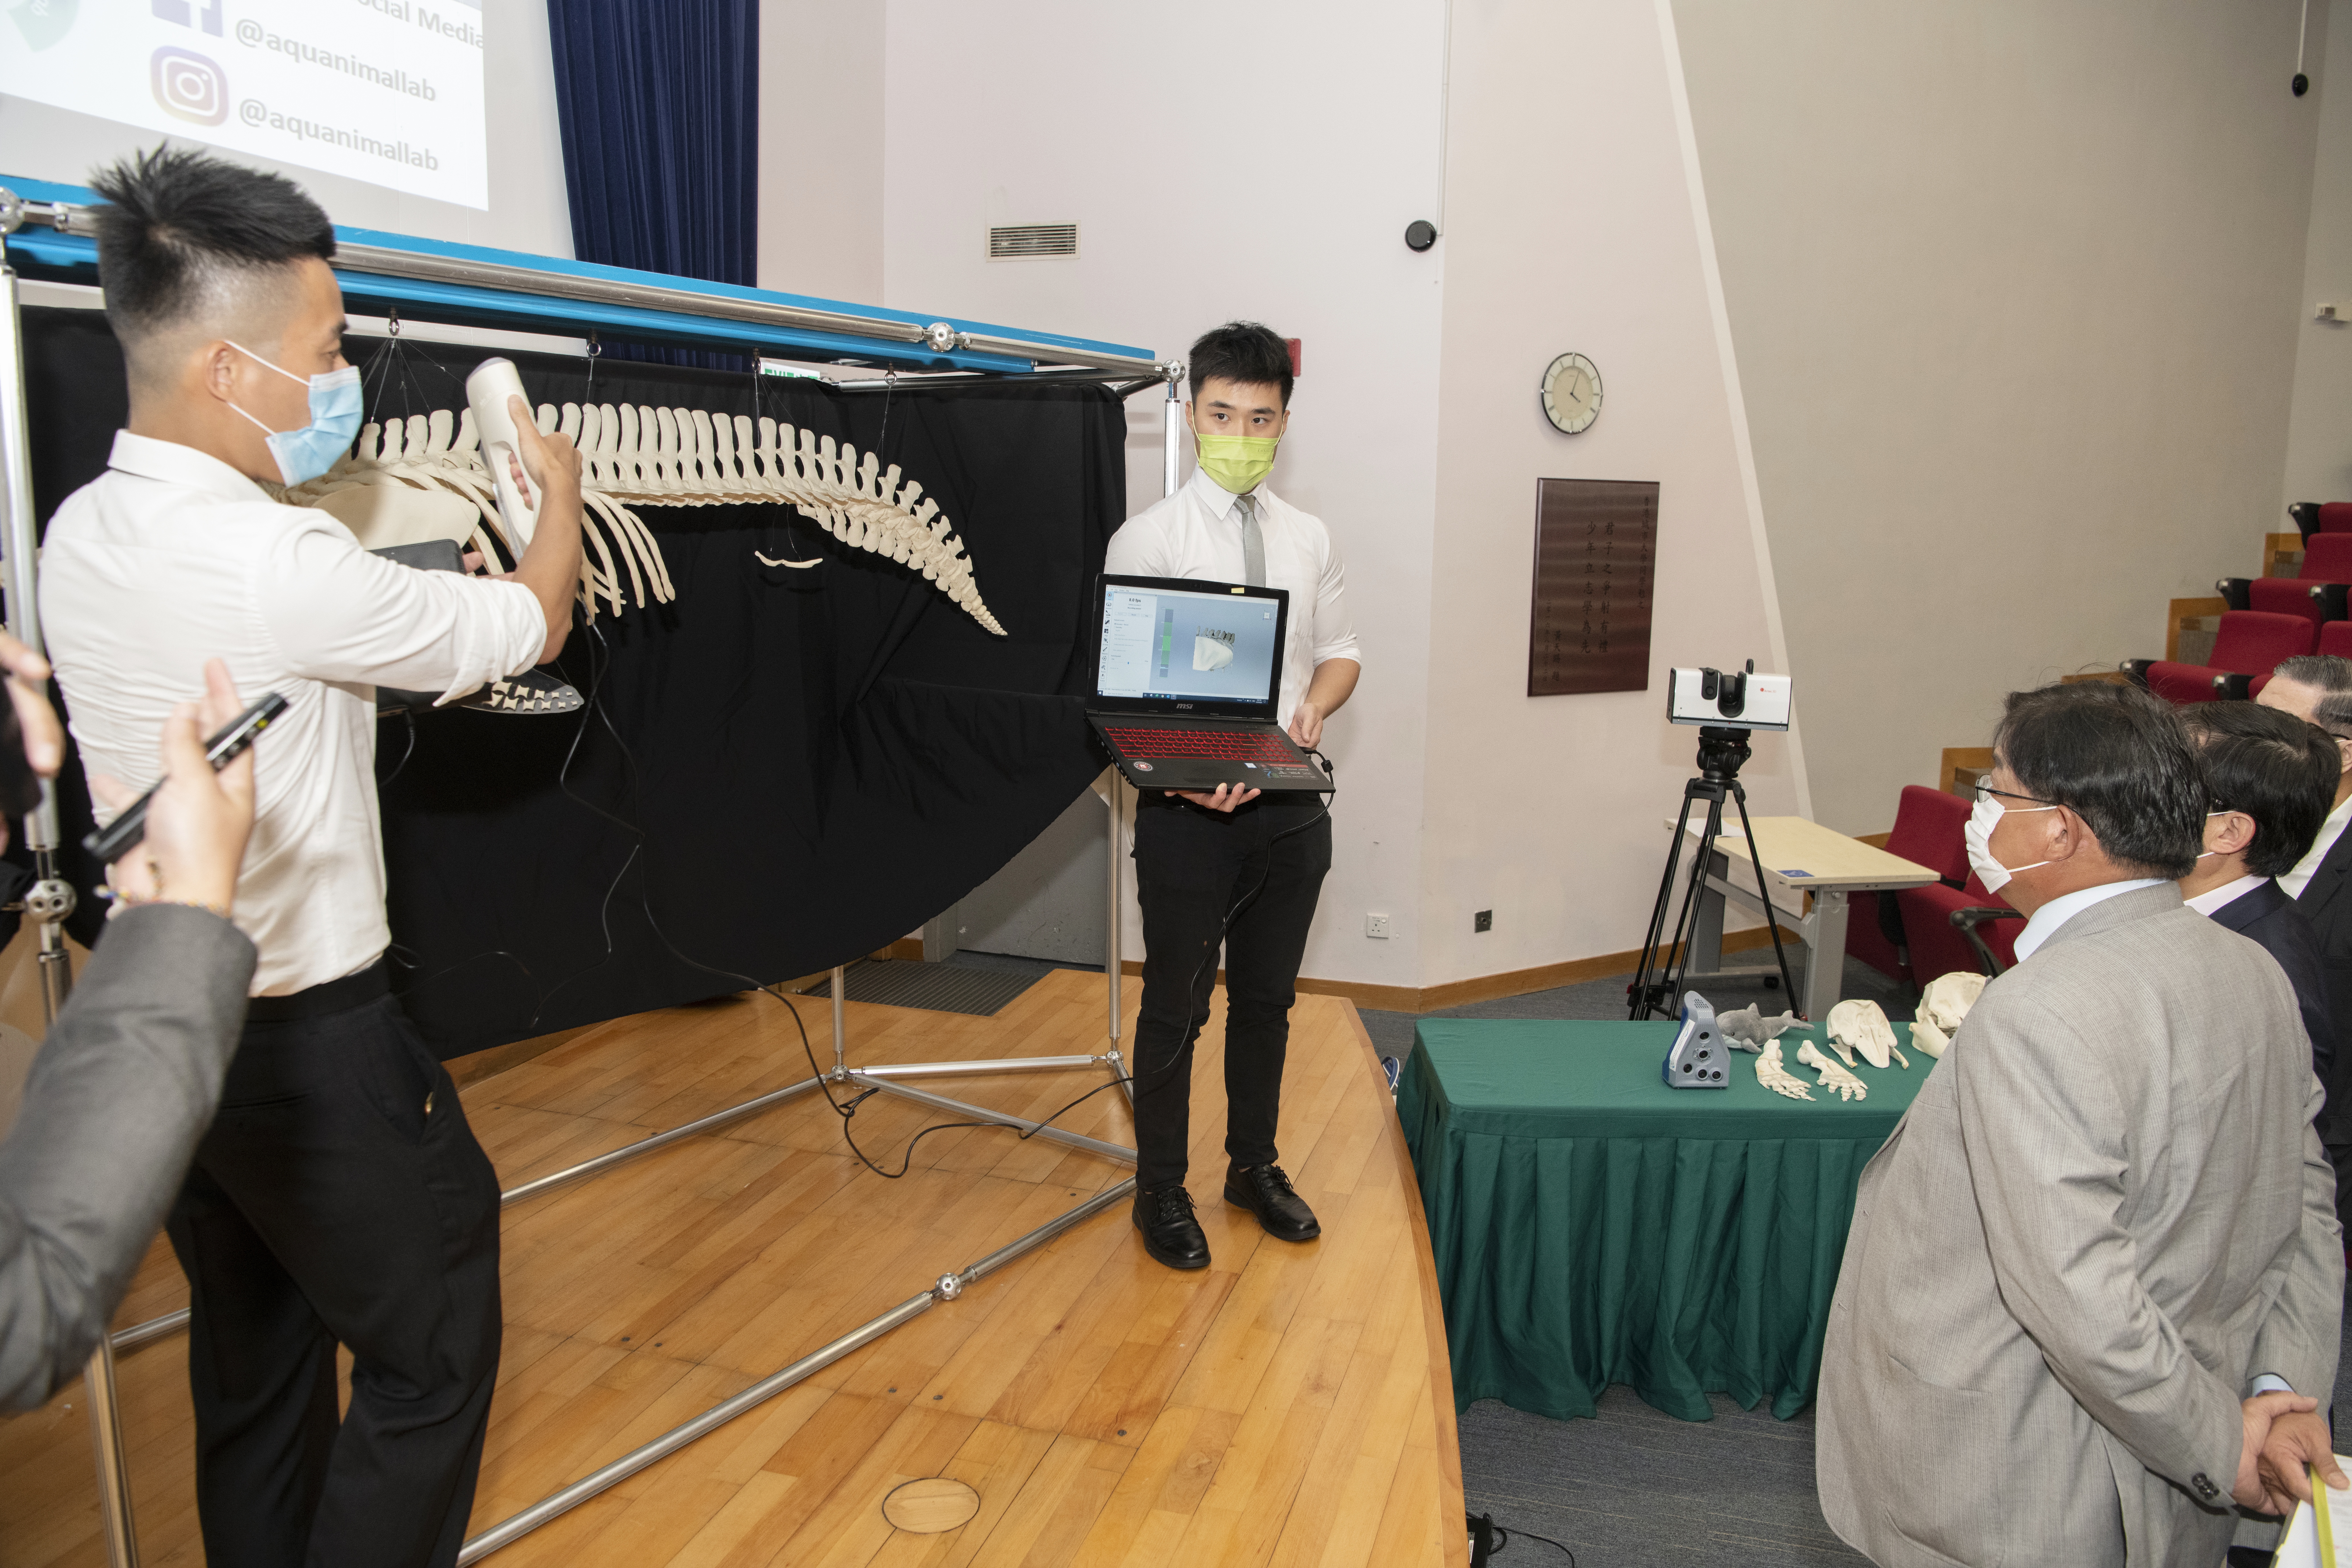 项目团队示范对搁浅鲸豚动物进行影像解剖的方法。